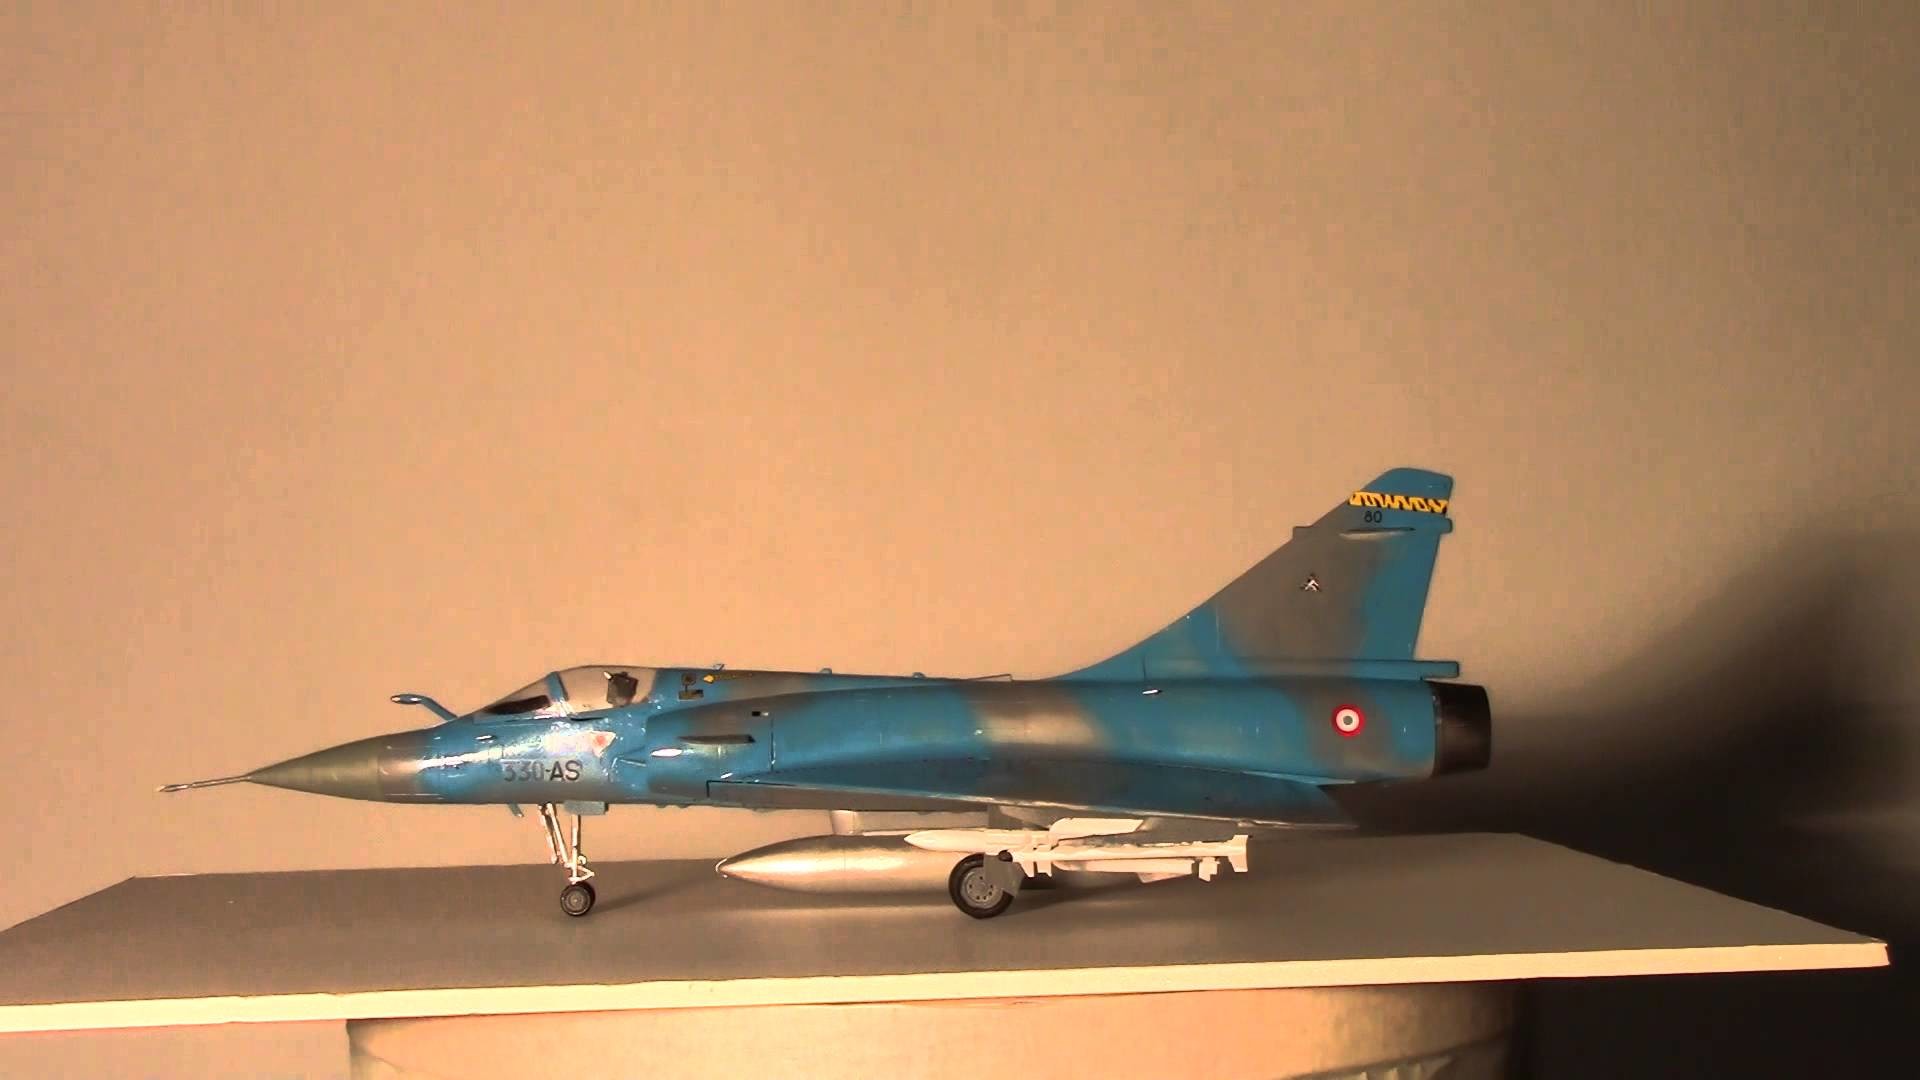 1920x1080 Dassault Mirage 2000 C